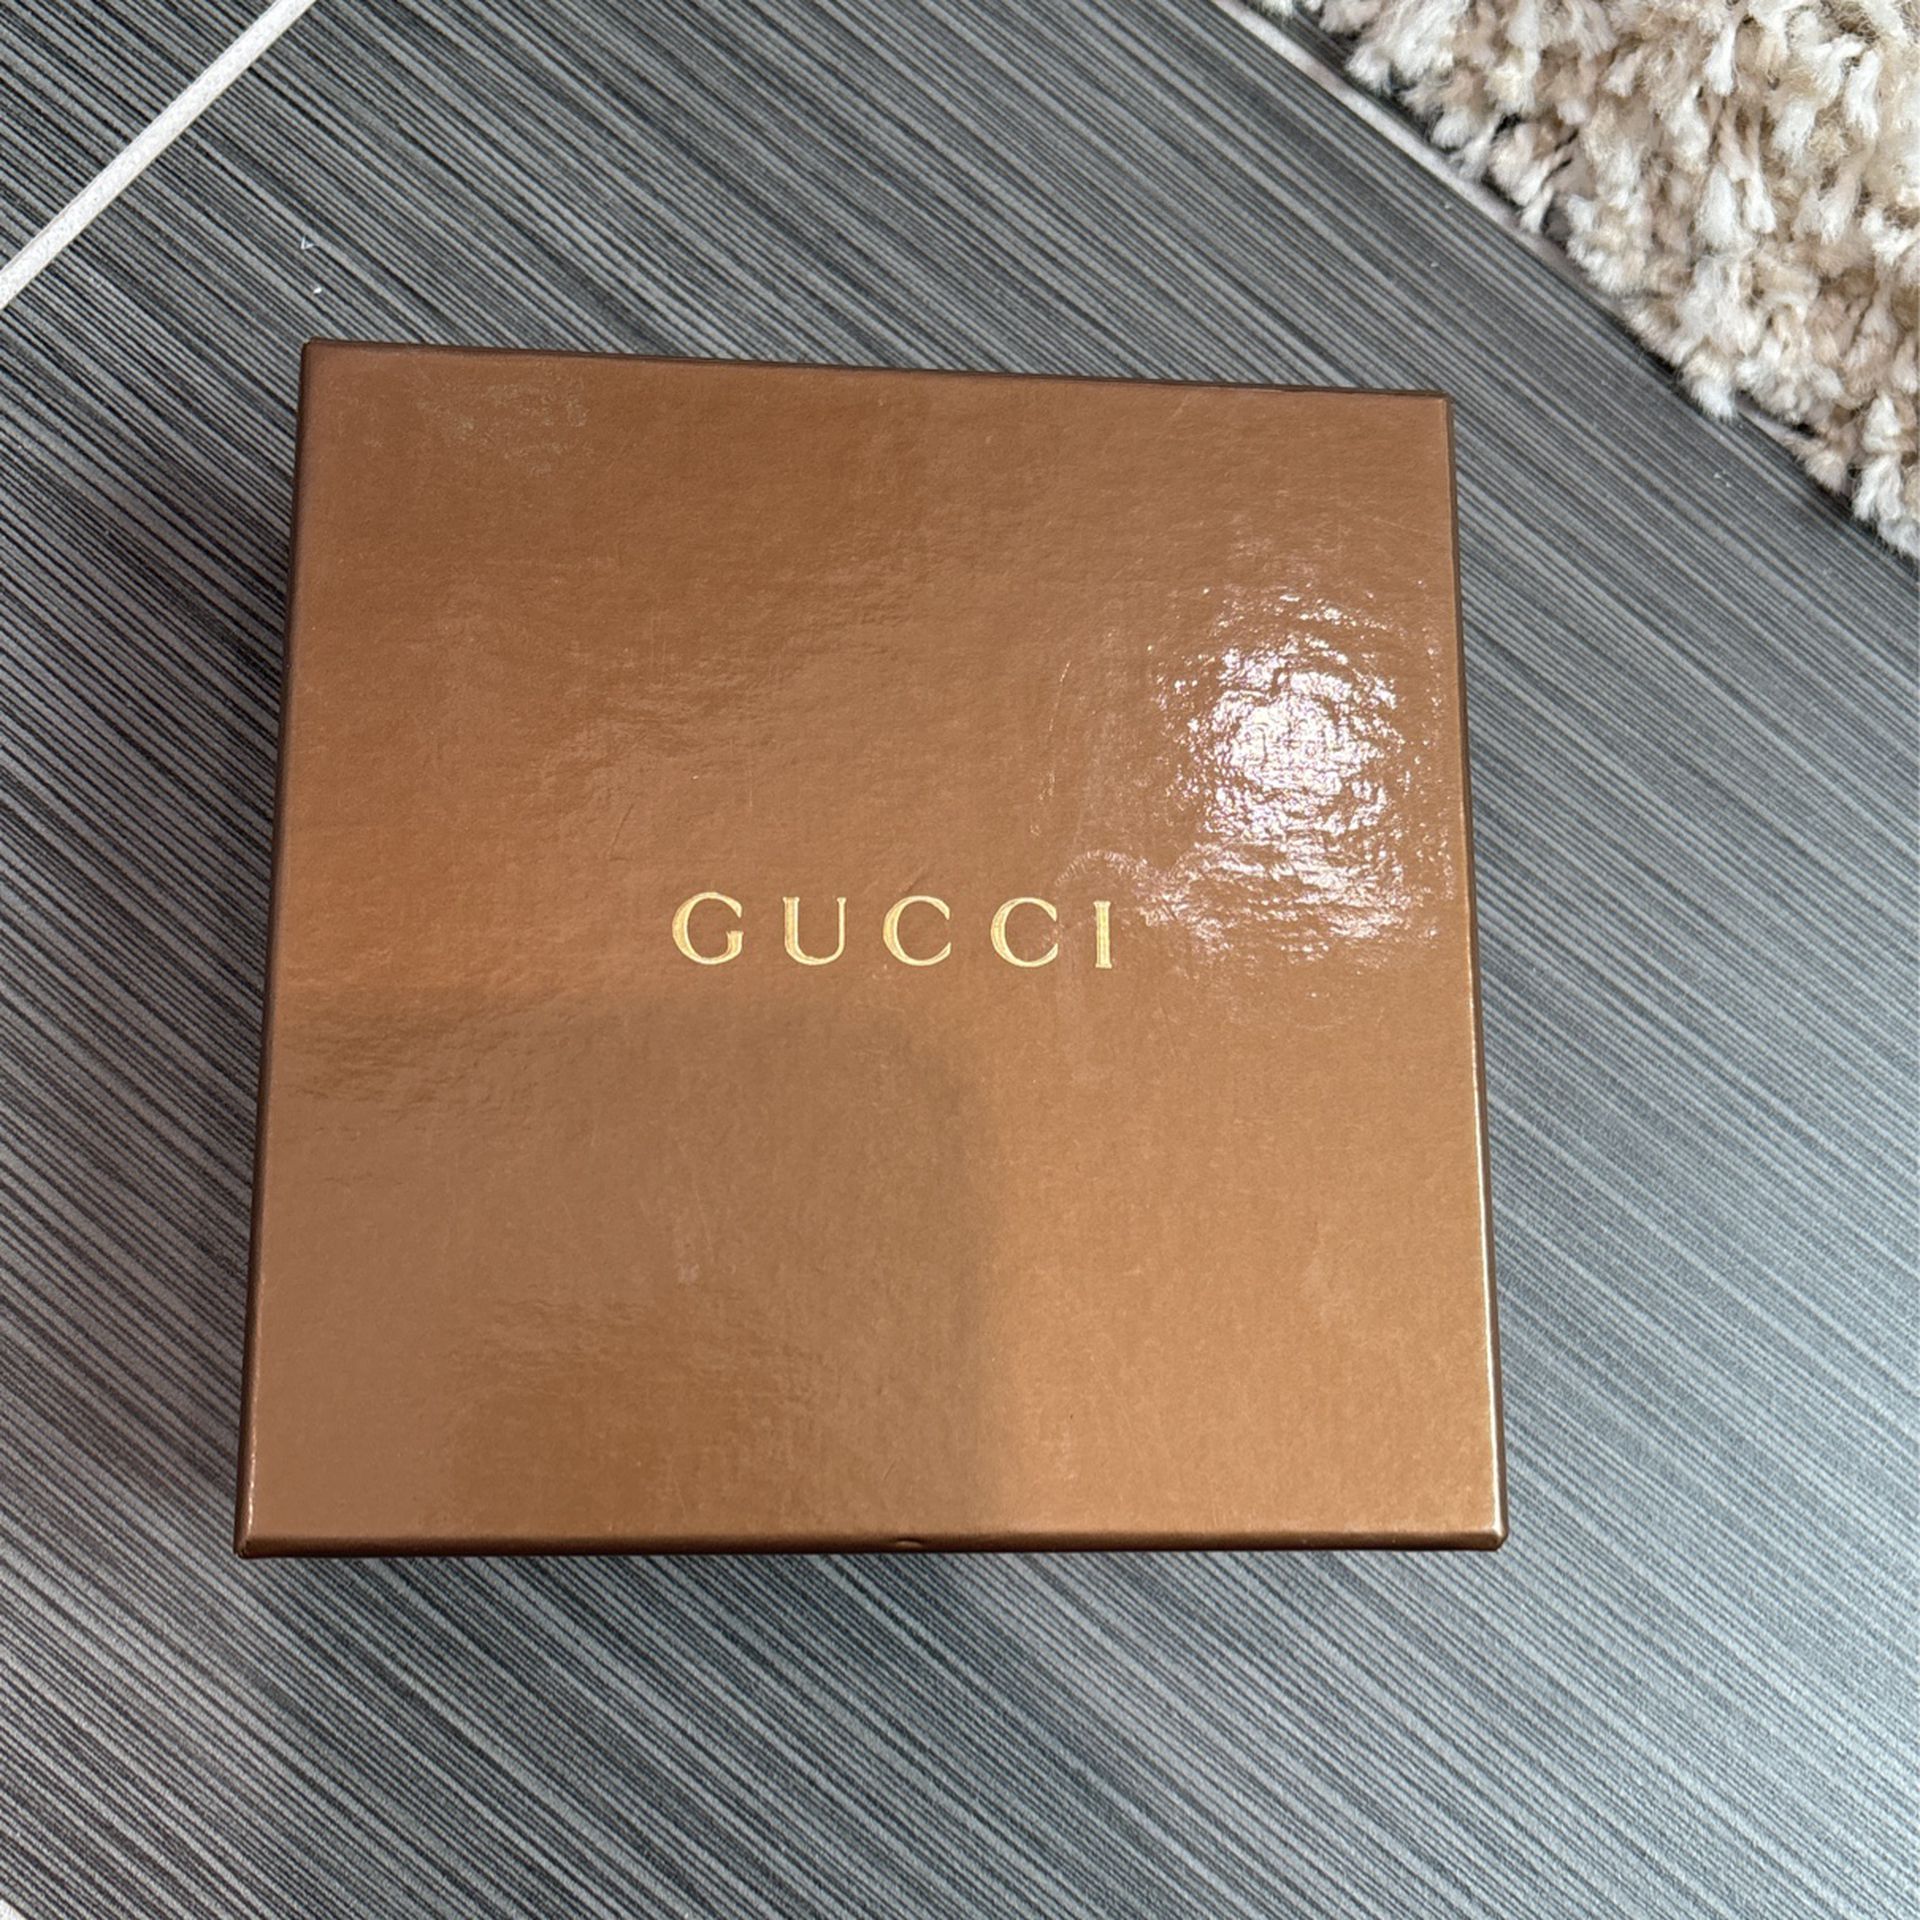 Vintage Gucci Wallet In Box